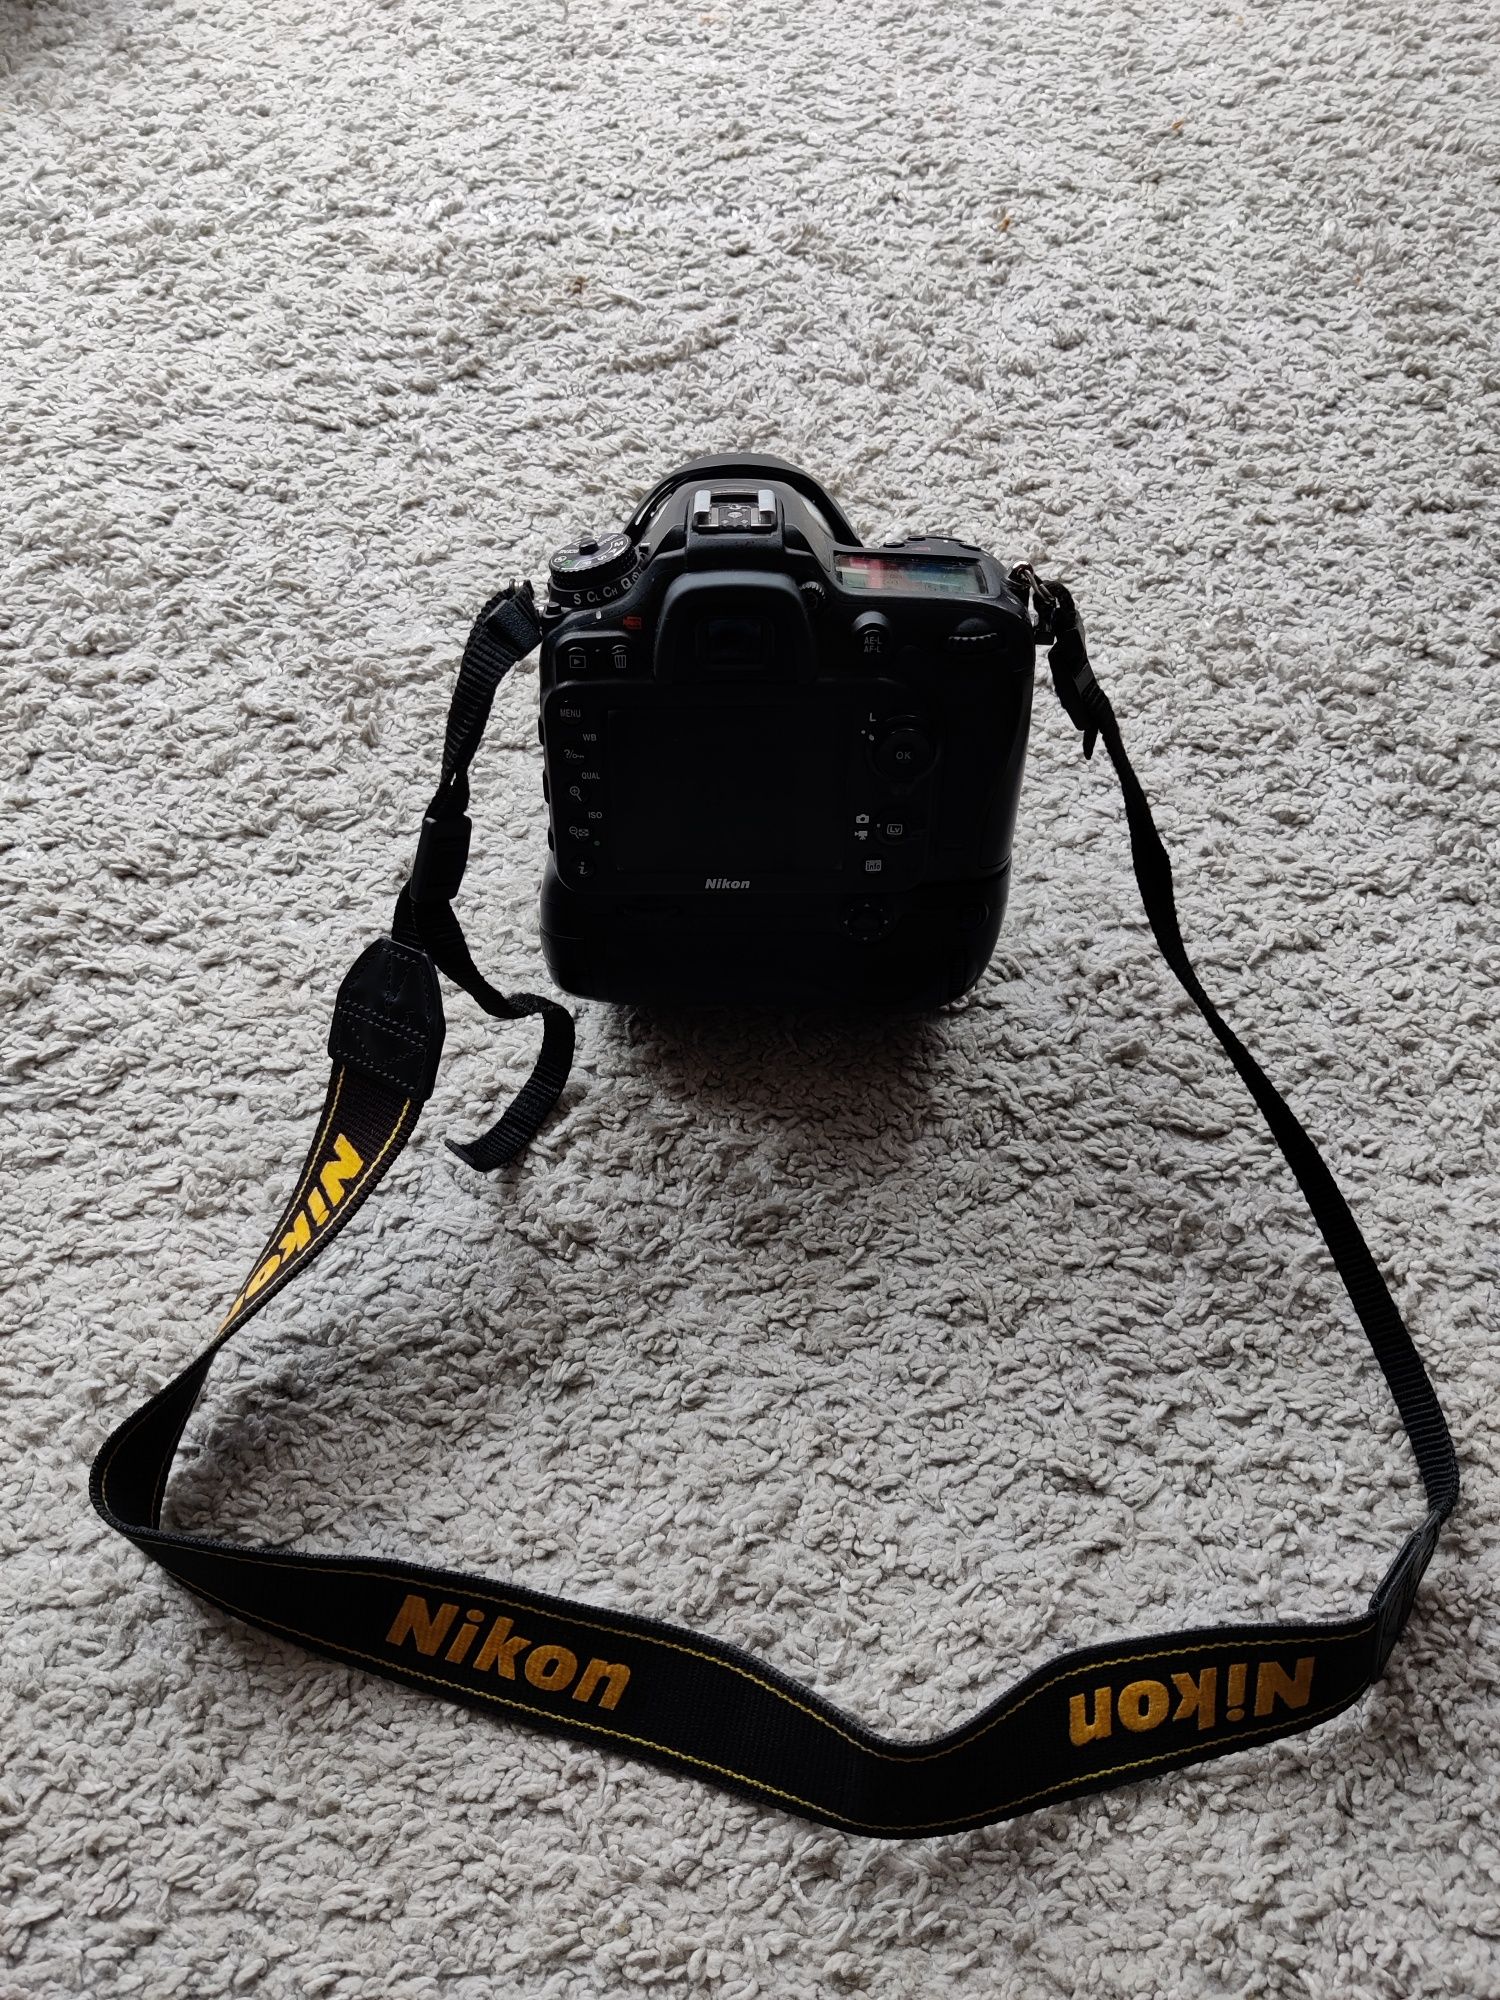 Nikon D7100 16-85